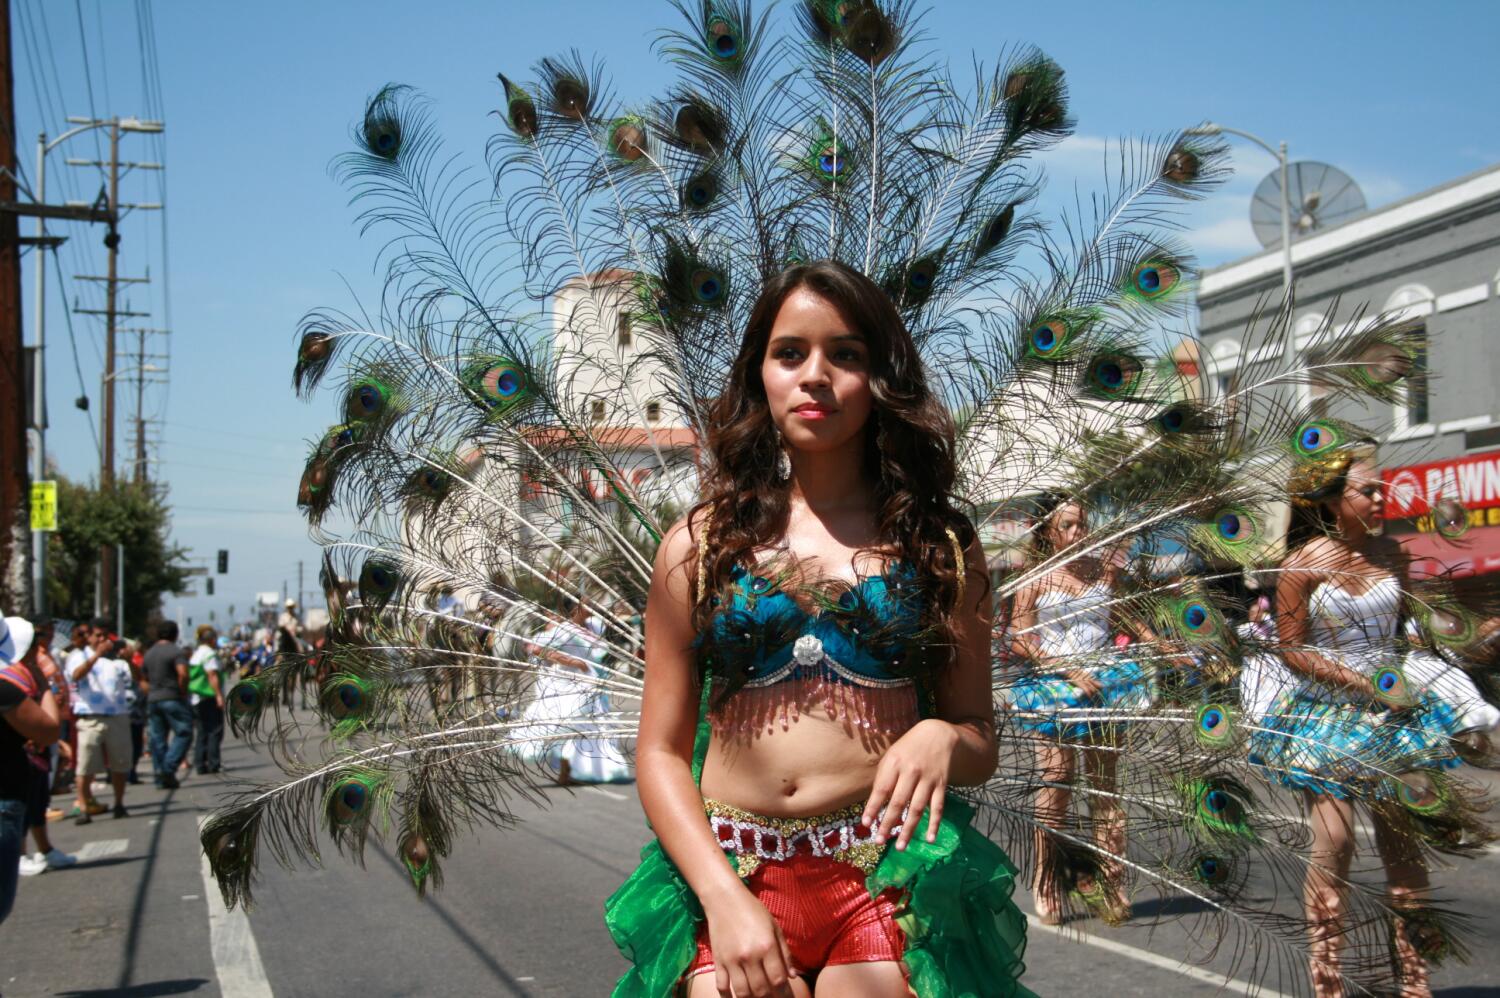 Calendario: Inician las fiestas patrias en L.A. con desfile de la independencia de El Salvador